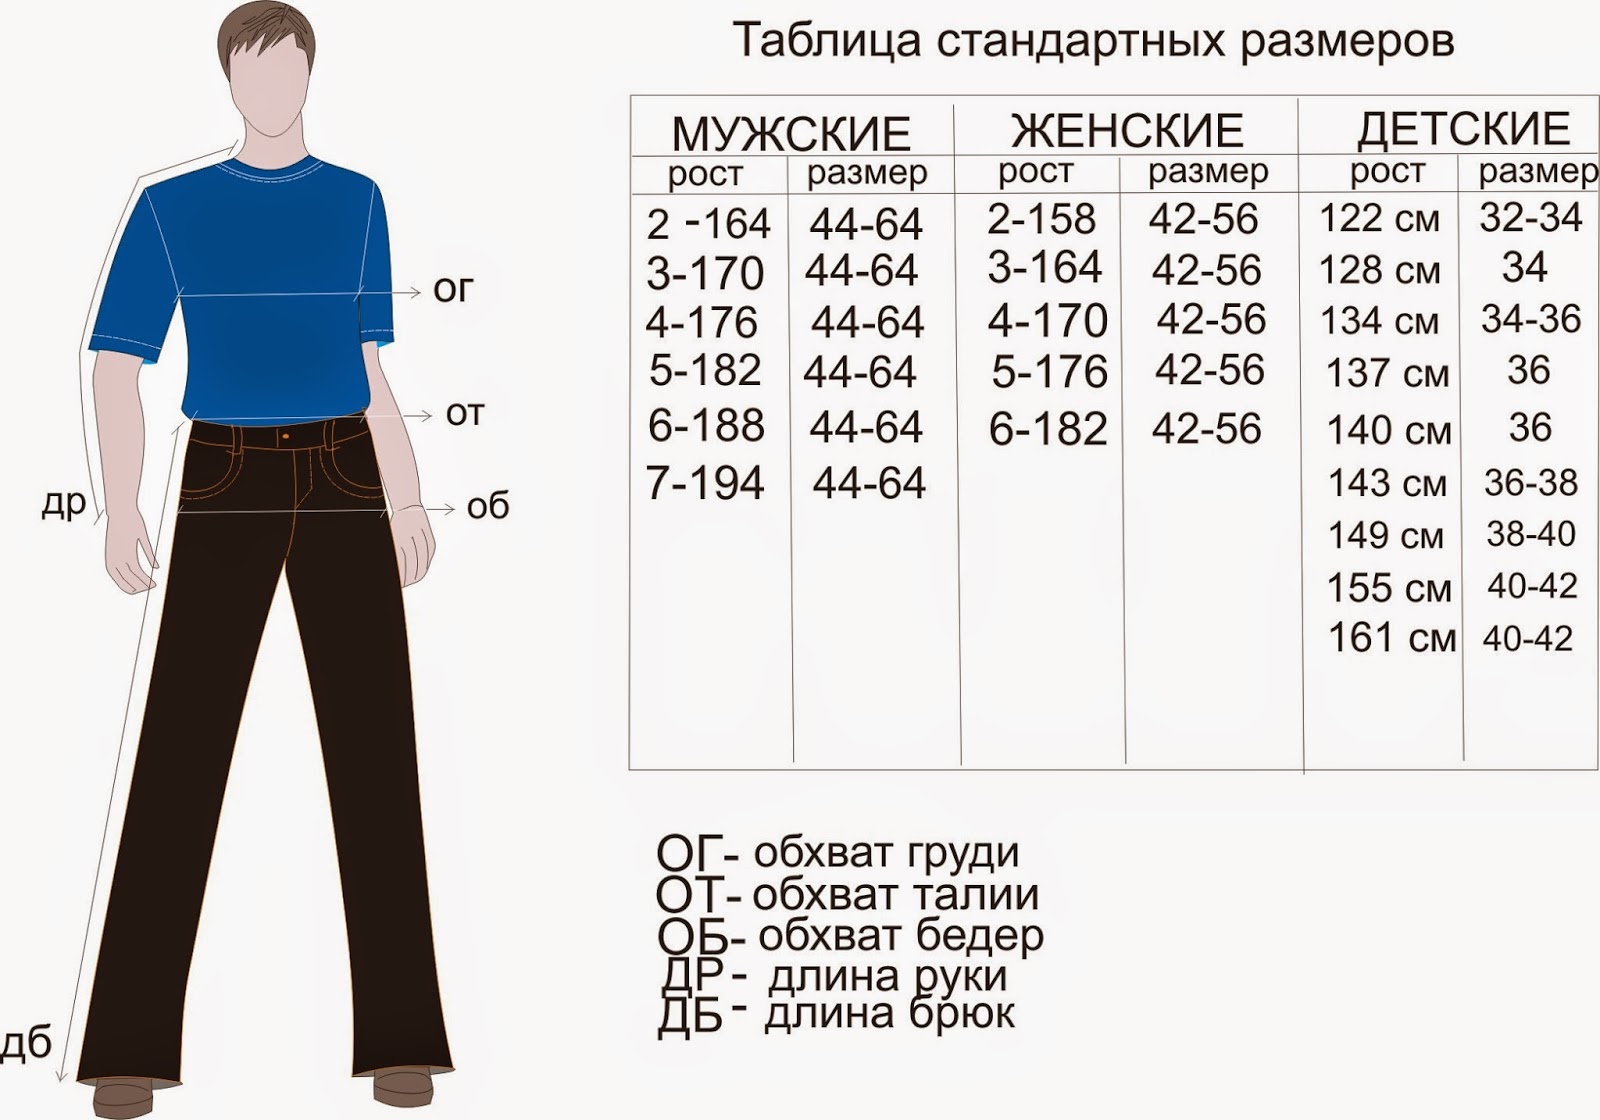 Вес и размер одежды для мужчин